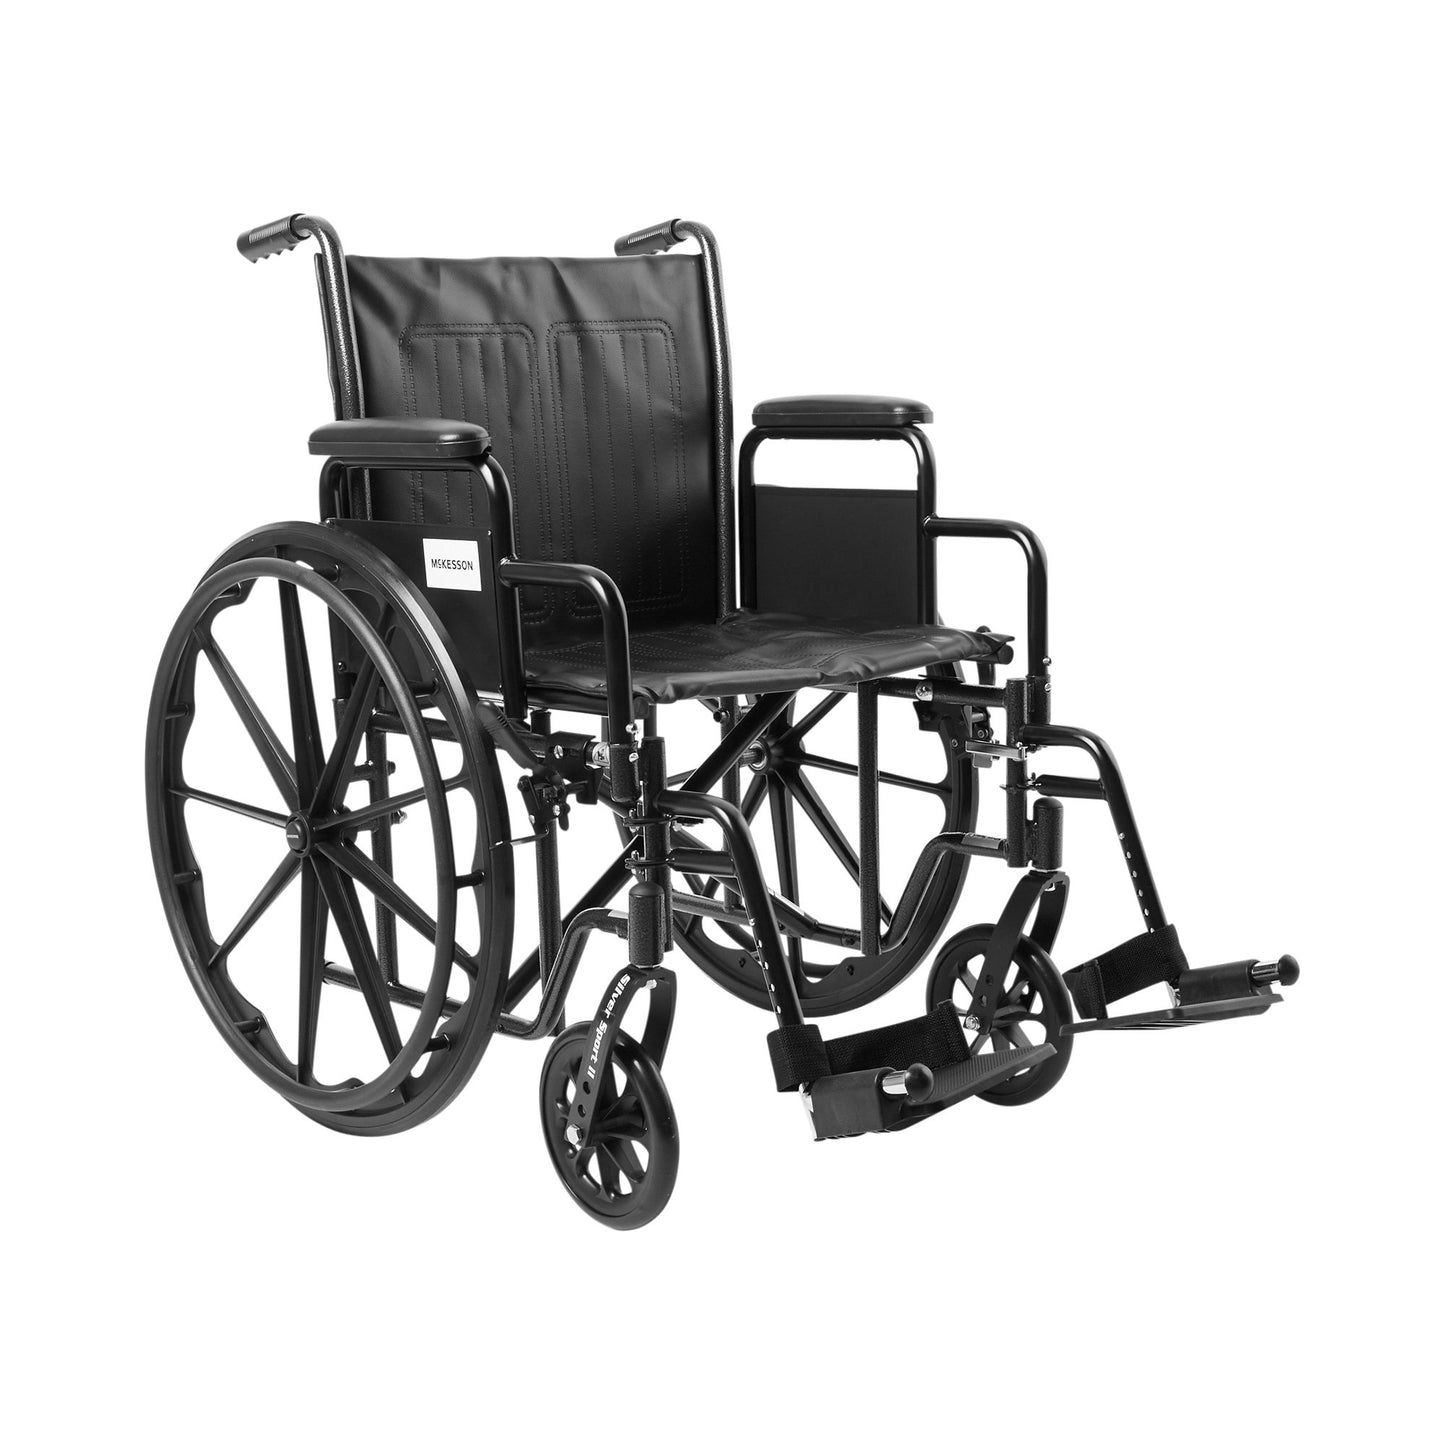 McKesson Wheelchair, 20 Inch Seat Width